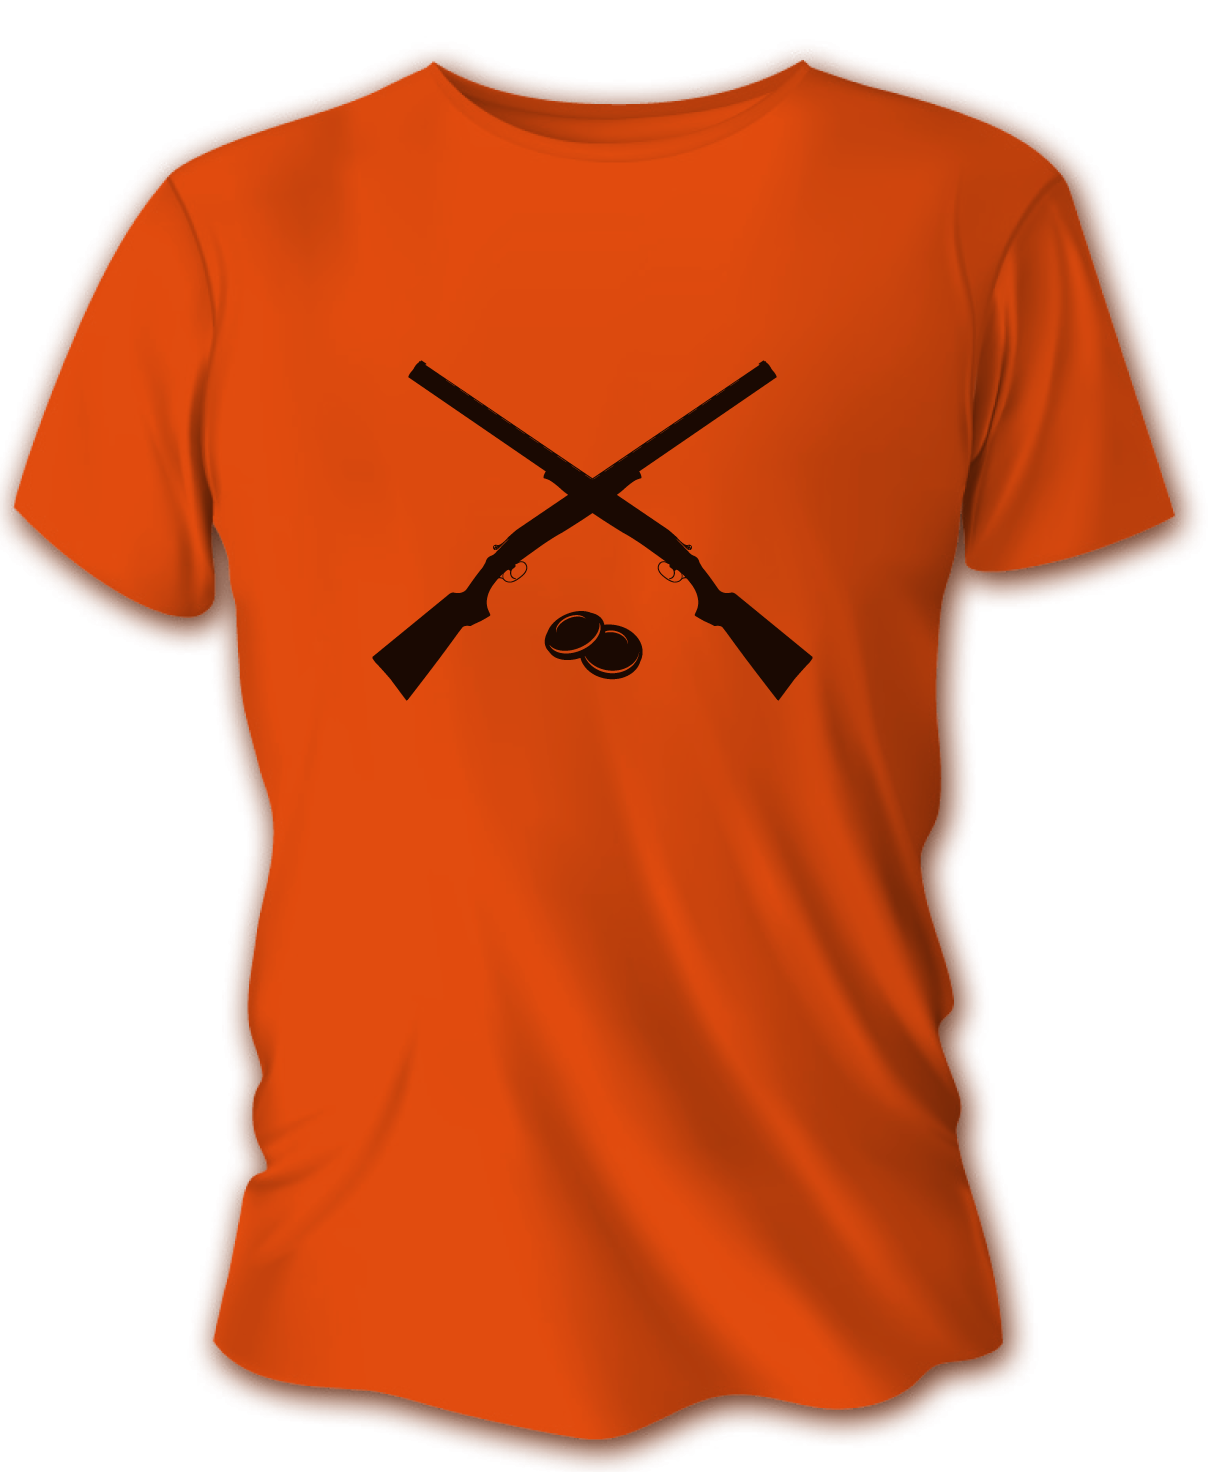 Pánske poľovnícke tričko TETRAO brokovnice - oranžové   M